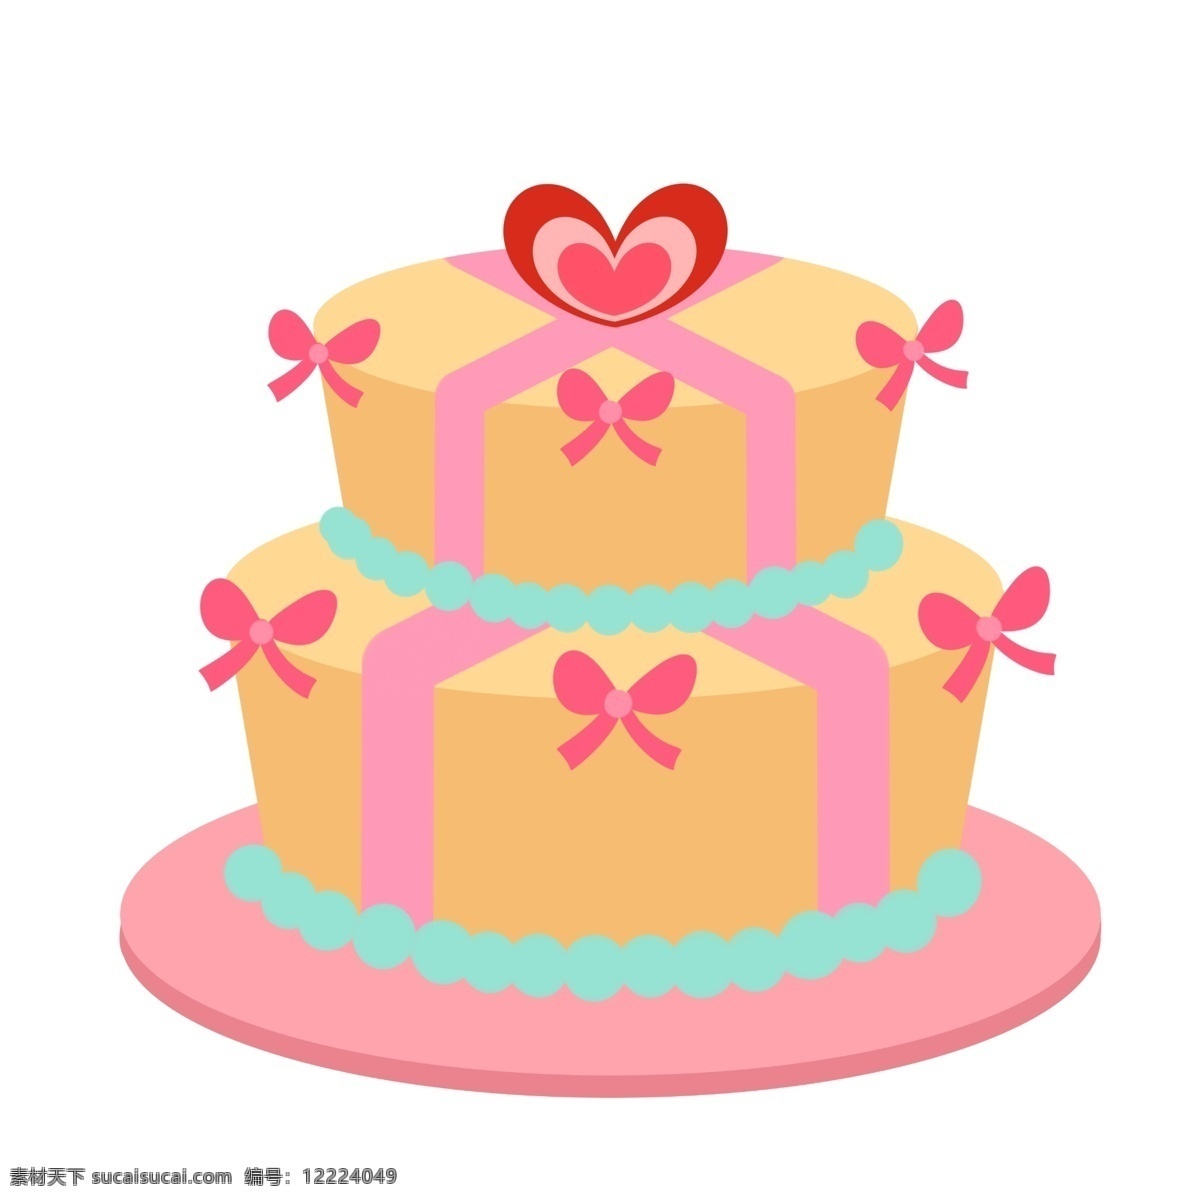 黄色 双层 蛋糕 插画 黄色蛋糕 双层蛋糕 美味的蛋糕 美食 食物 红心装饰 蝴蝶结装饰 卡通蛋糕插画